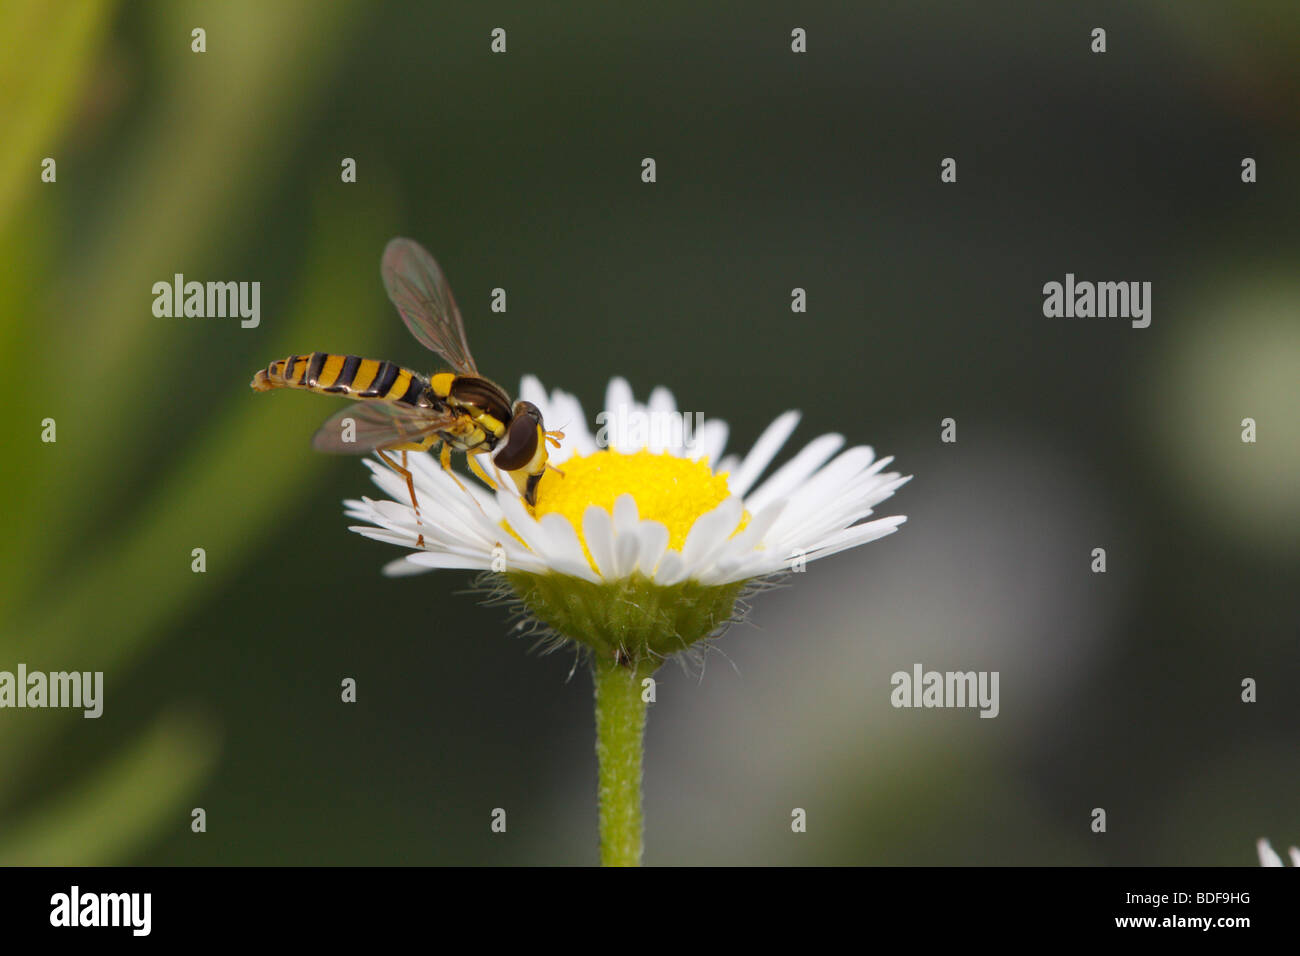 Sphaerophoria scripta, un hoverfly, alimentando il fleabane daisy (Erigeron). Uno dei più abbondanti specie hoverfly. Foto Stock